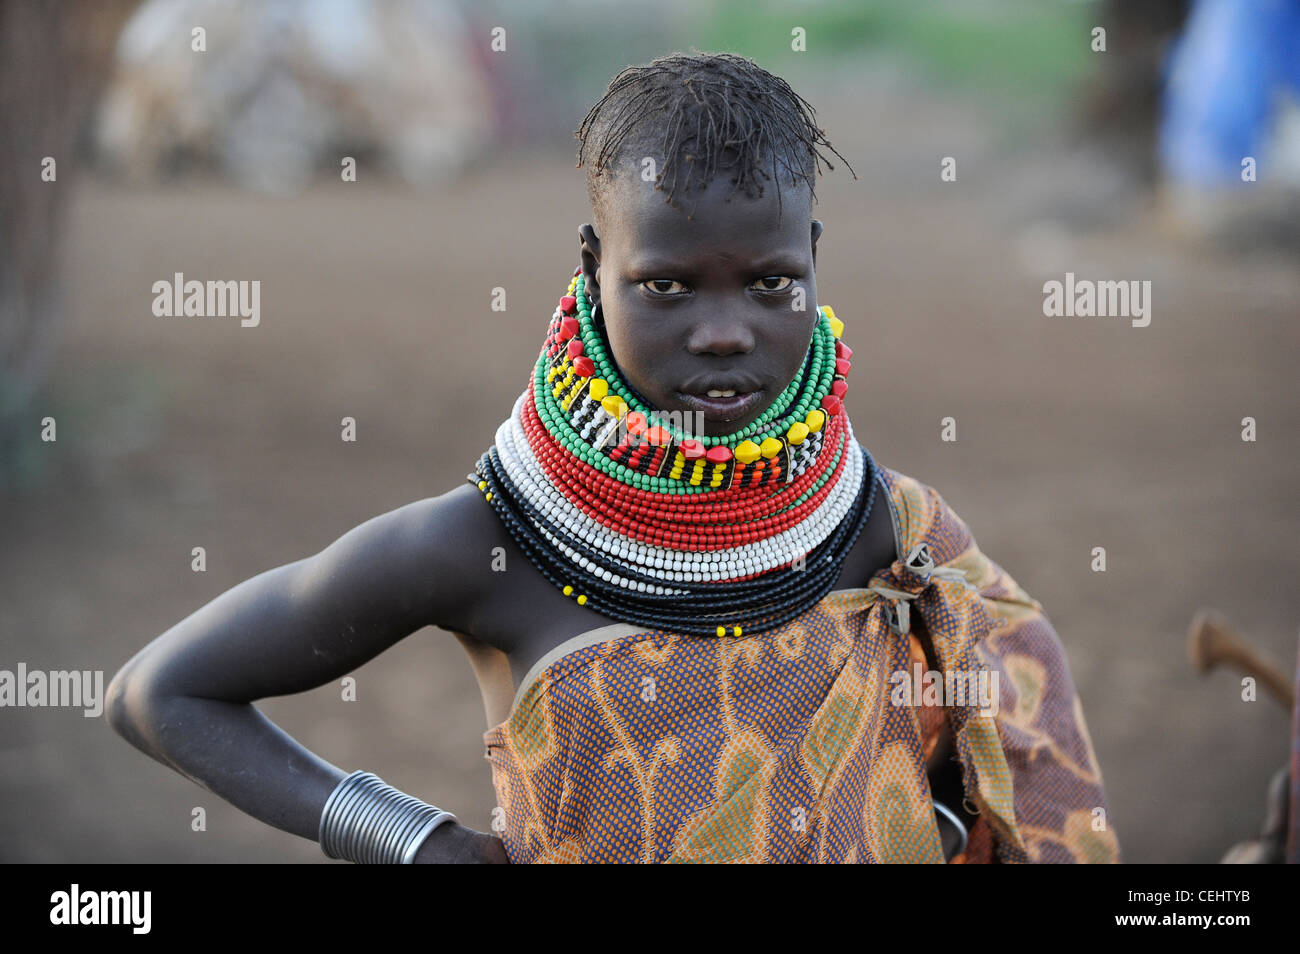 KENIA Turkana Region, Kakuma, Turkana ein nilotischer Stamm, Hungerkatastrophen sind dauerhaft aufgrund des Klimawandels und der Dürre, Don Bosco verteilt Nahrungsmittel an hungernde Frauen und Kinder Stockfoto